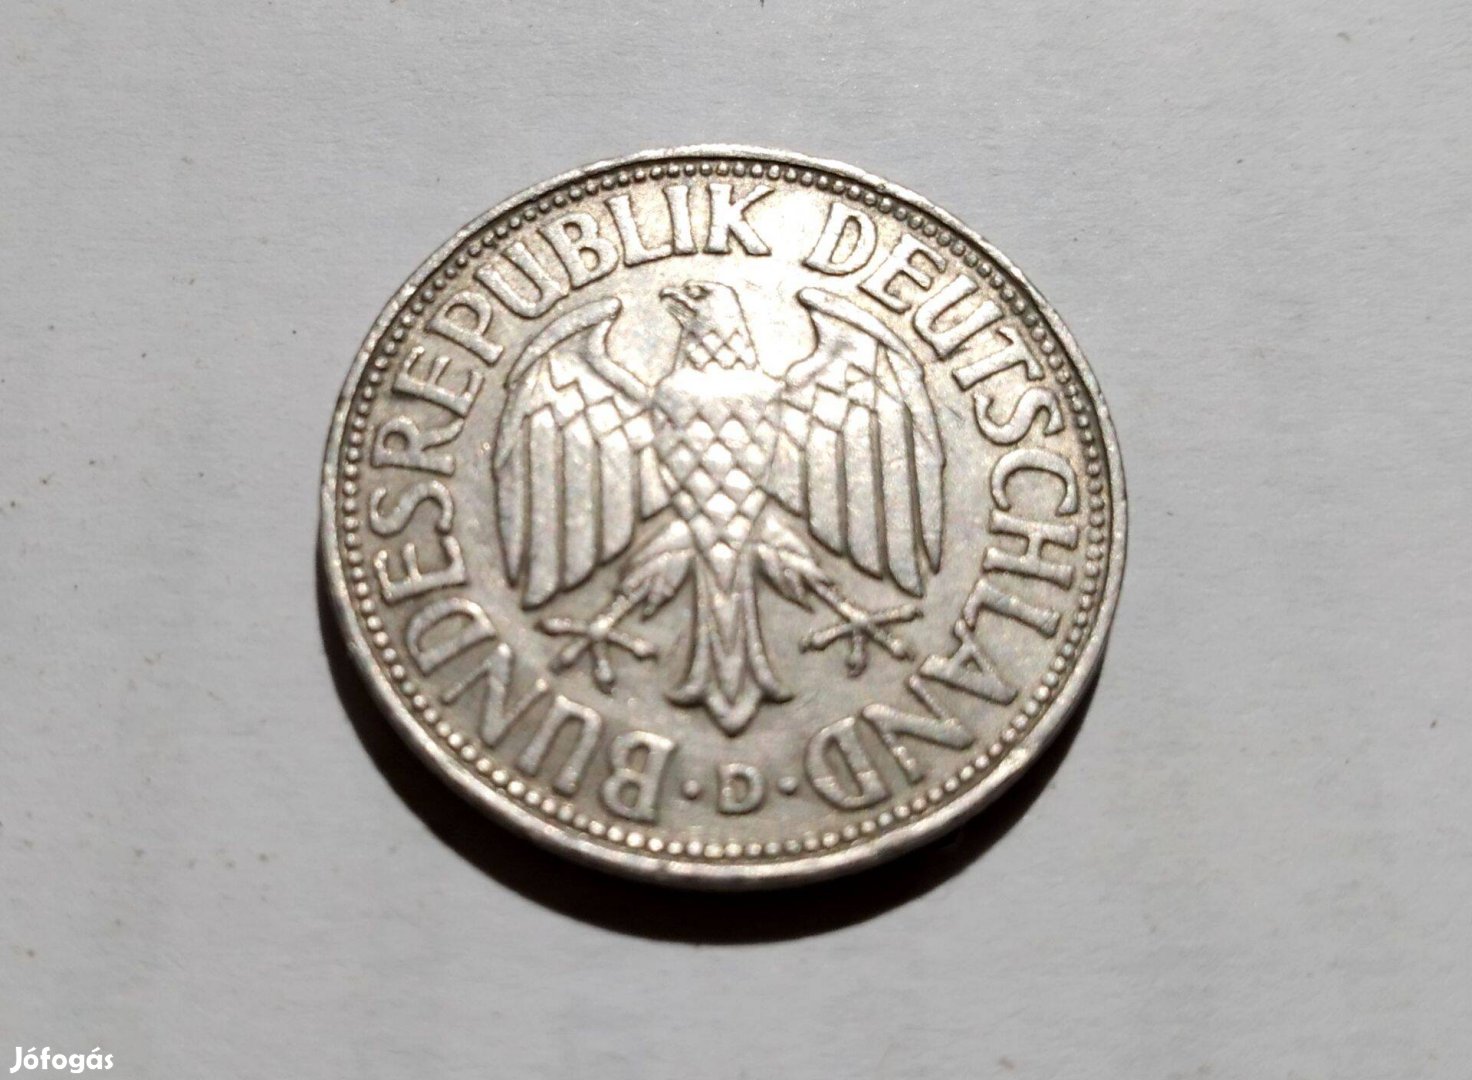 1 NSZK márka ( 1 deutsche mark ) érme, 1968